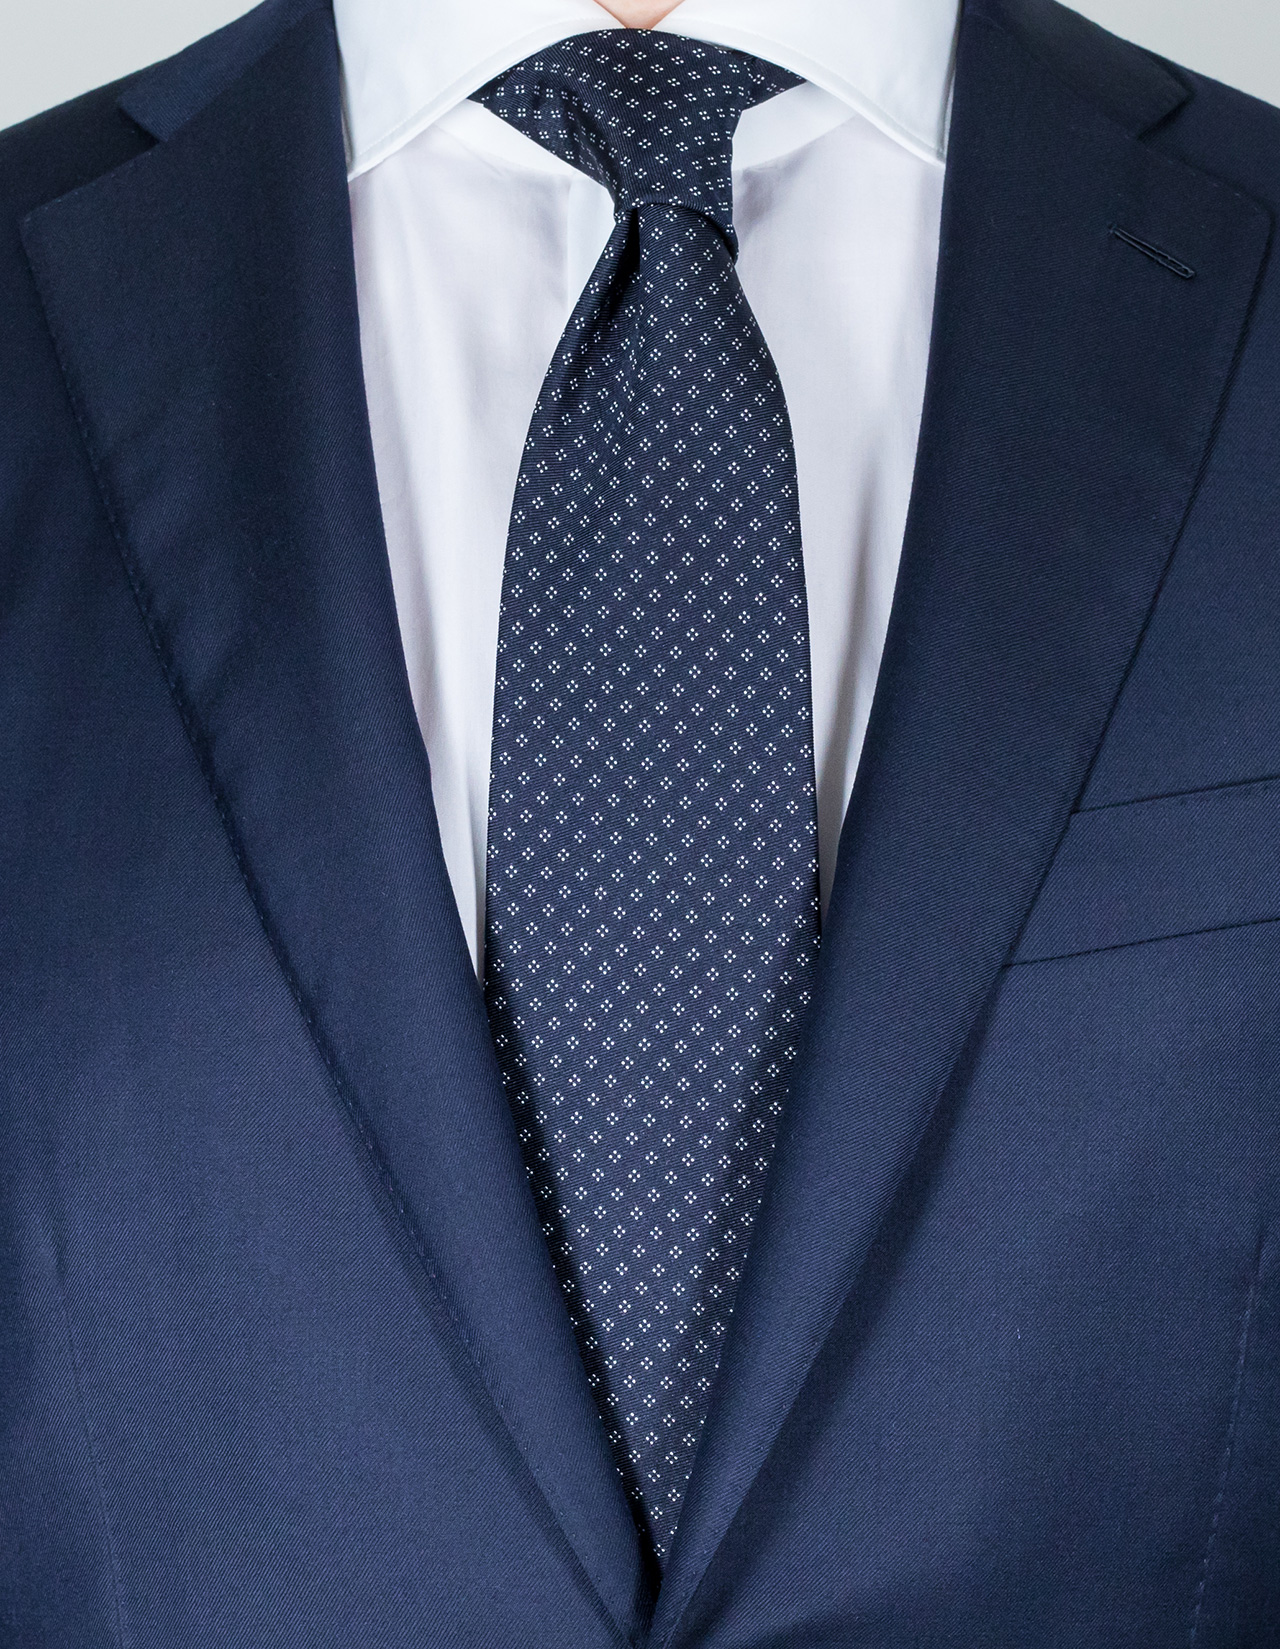 Luigi Borrelli Krawatte in dunkelblau mit weißem Muster